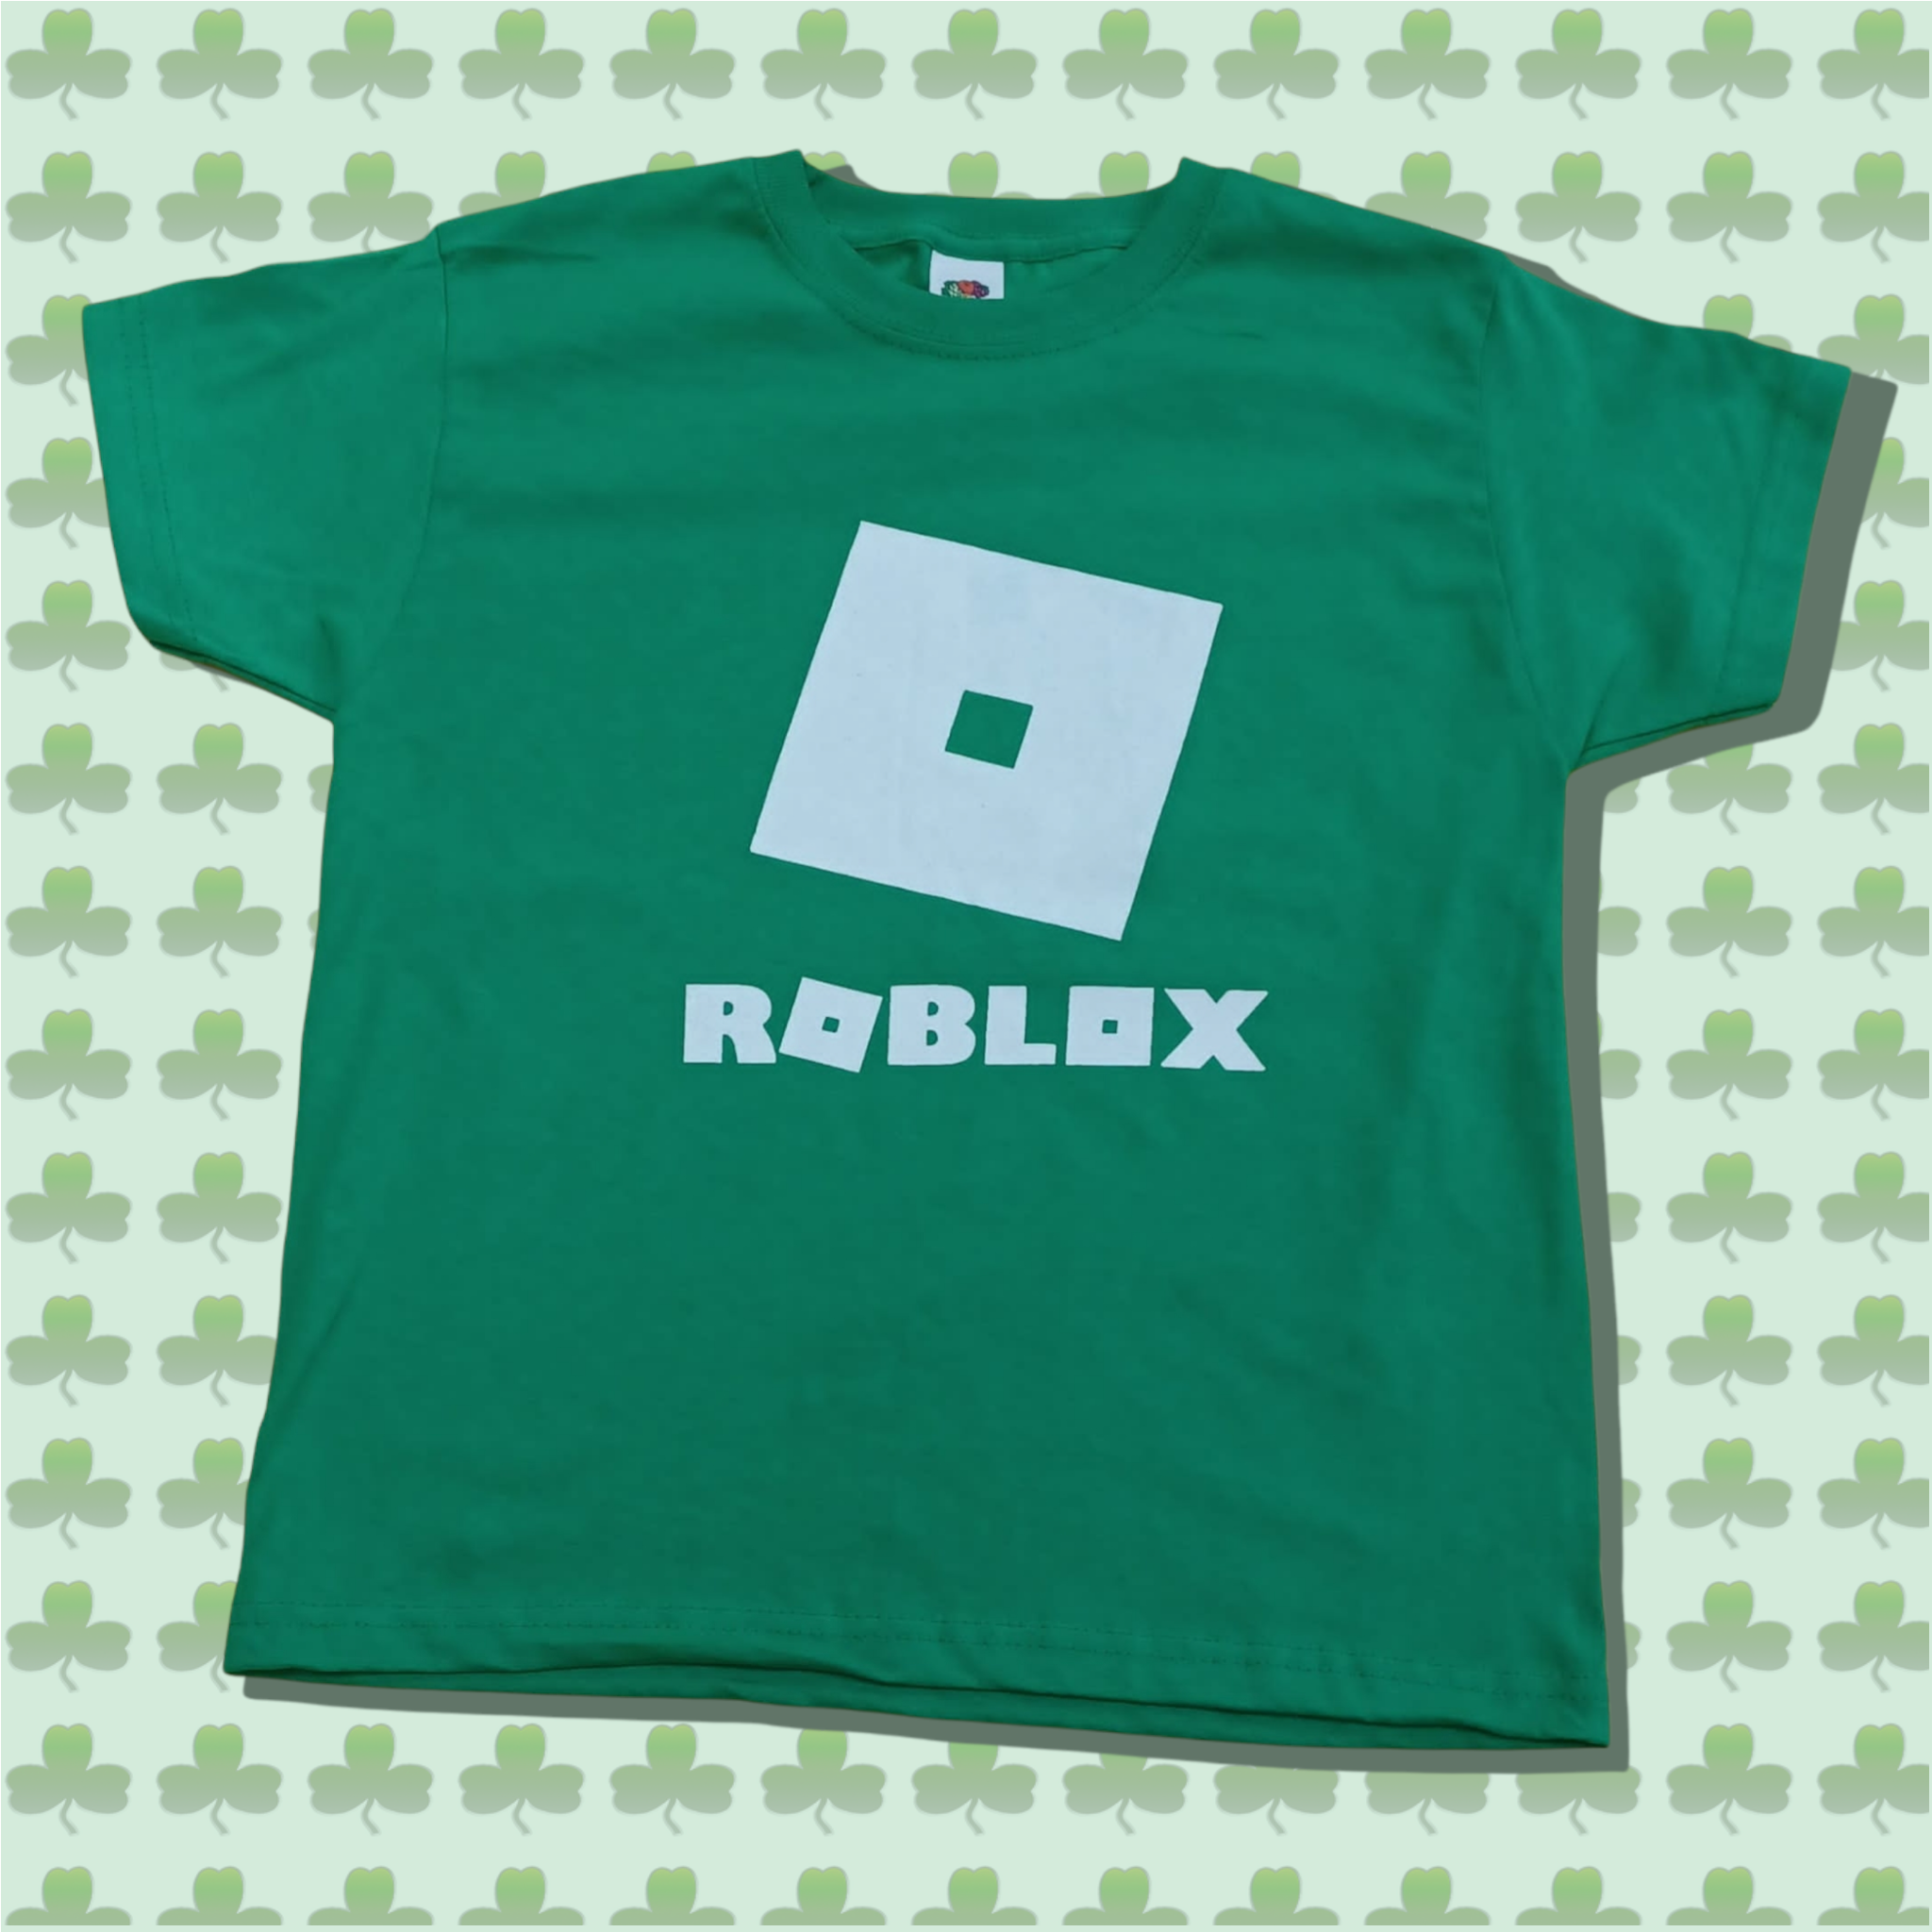 Fotos De •𝑆𝑝𝑟𝑘𝑙𝑒• En T-shirt Roblox En 2021 07E